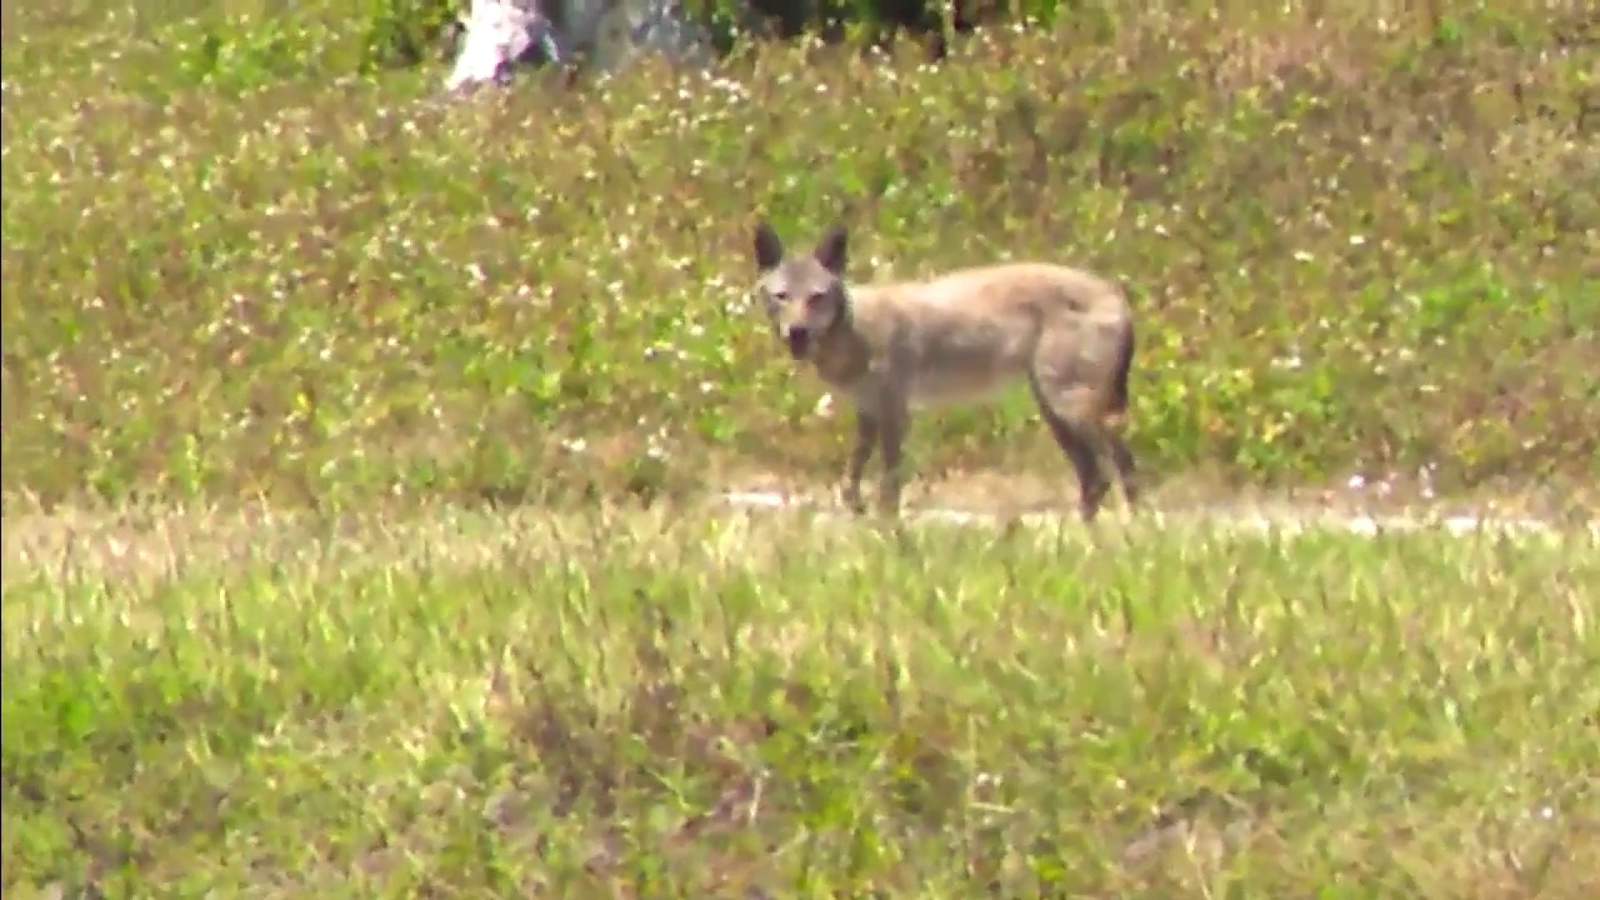 Coyote sightings increase in areas of Broward, residents say